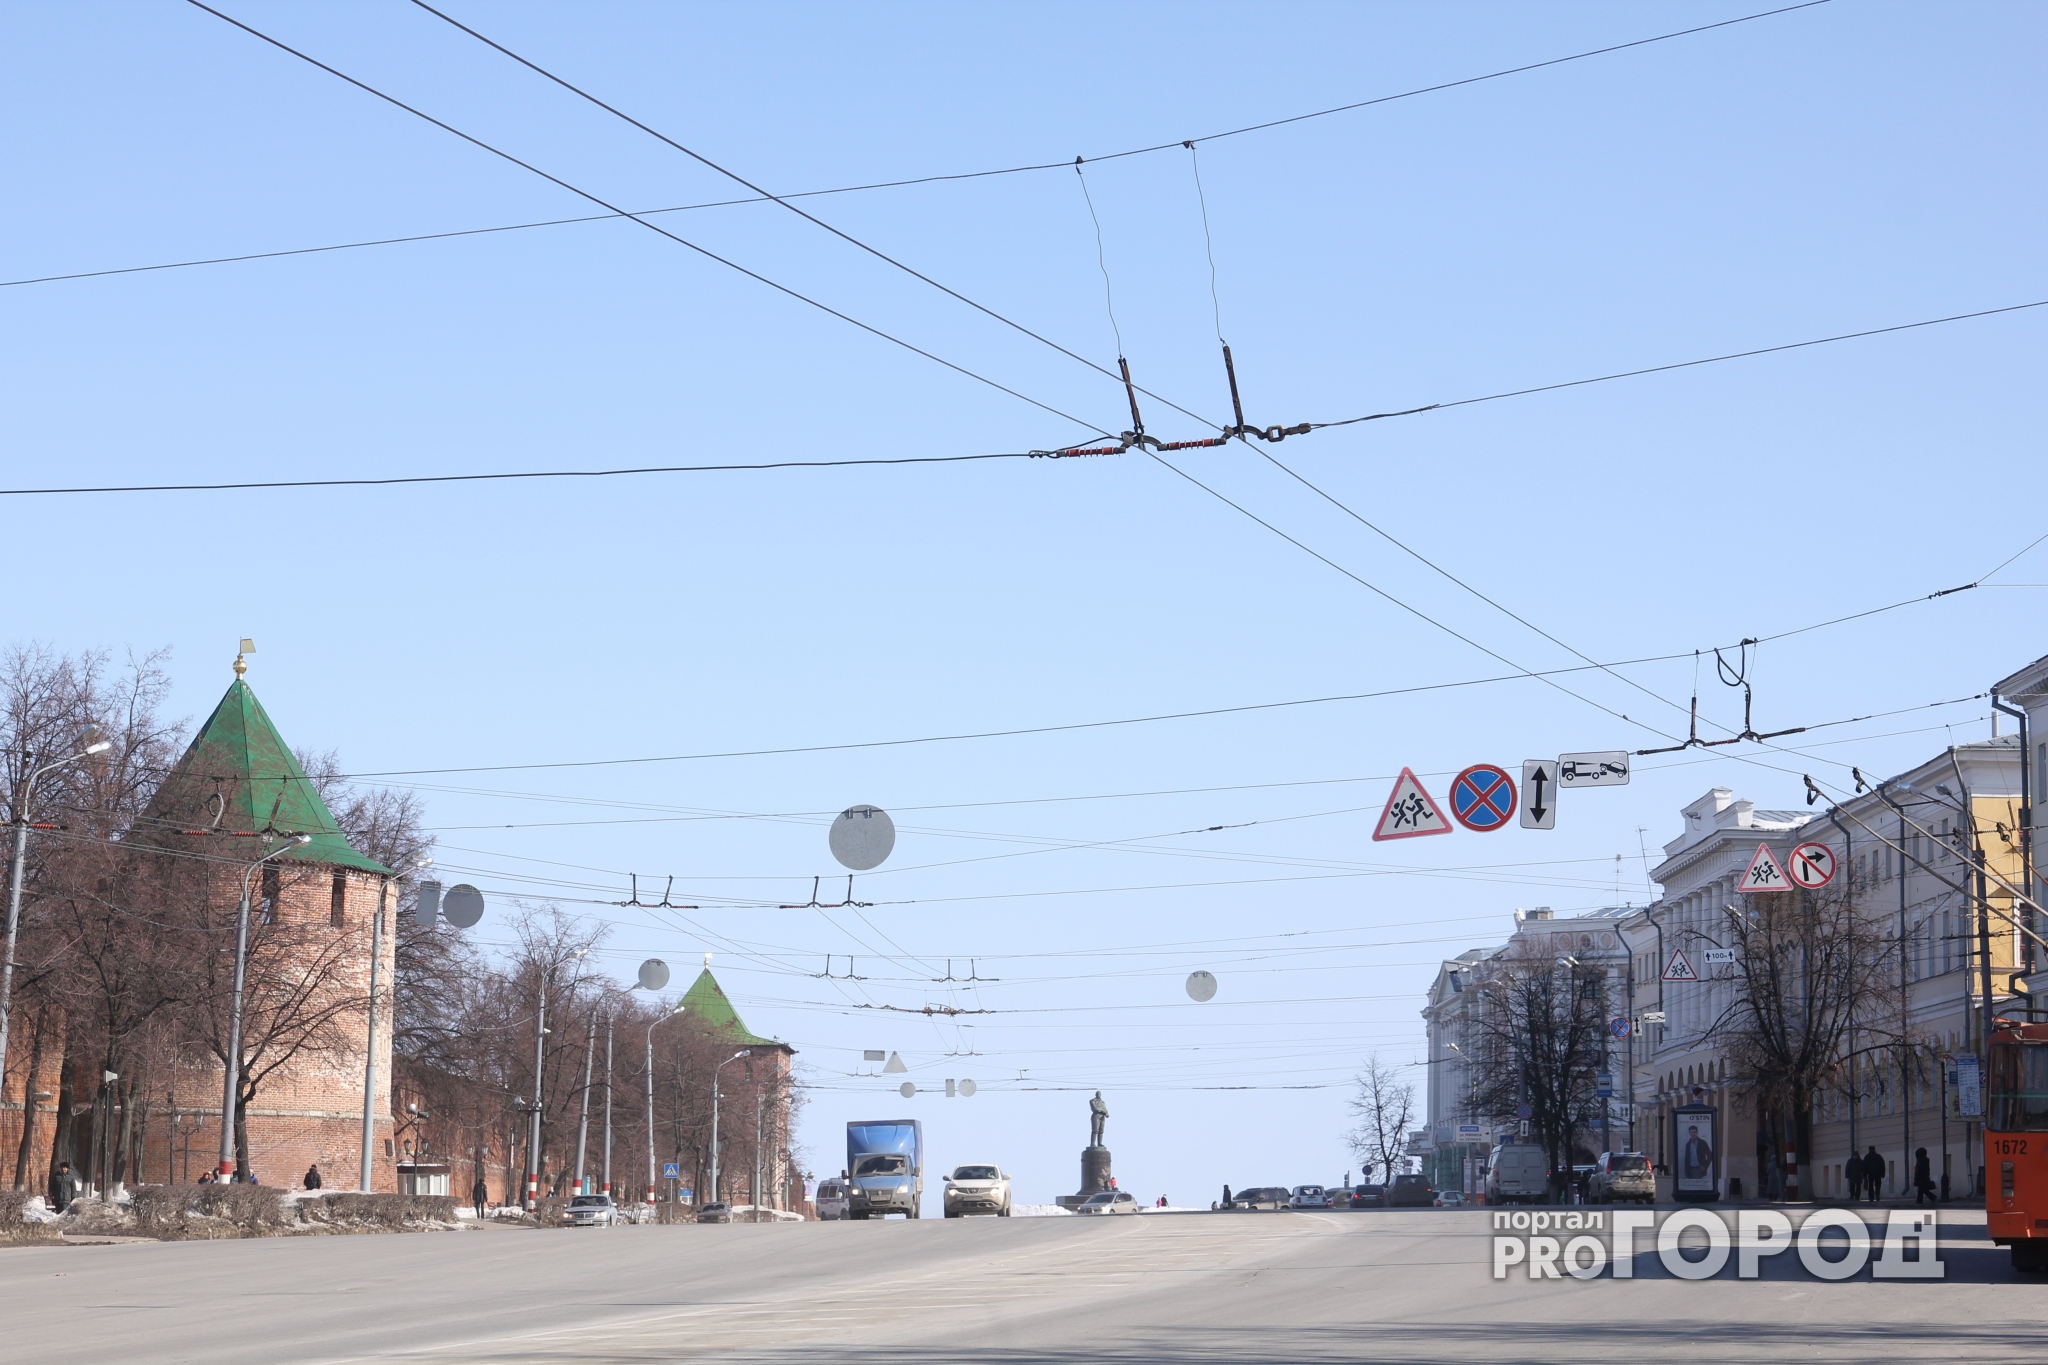 Благоустройство скверов в центре Нижнего Новгорода обойдется почти в 73 миллиона рублей